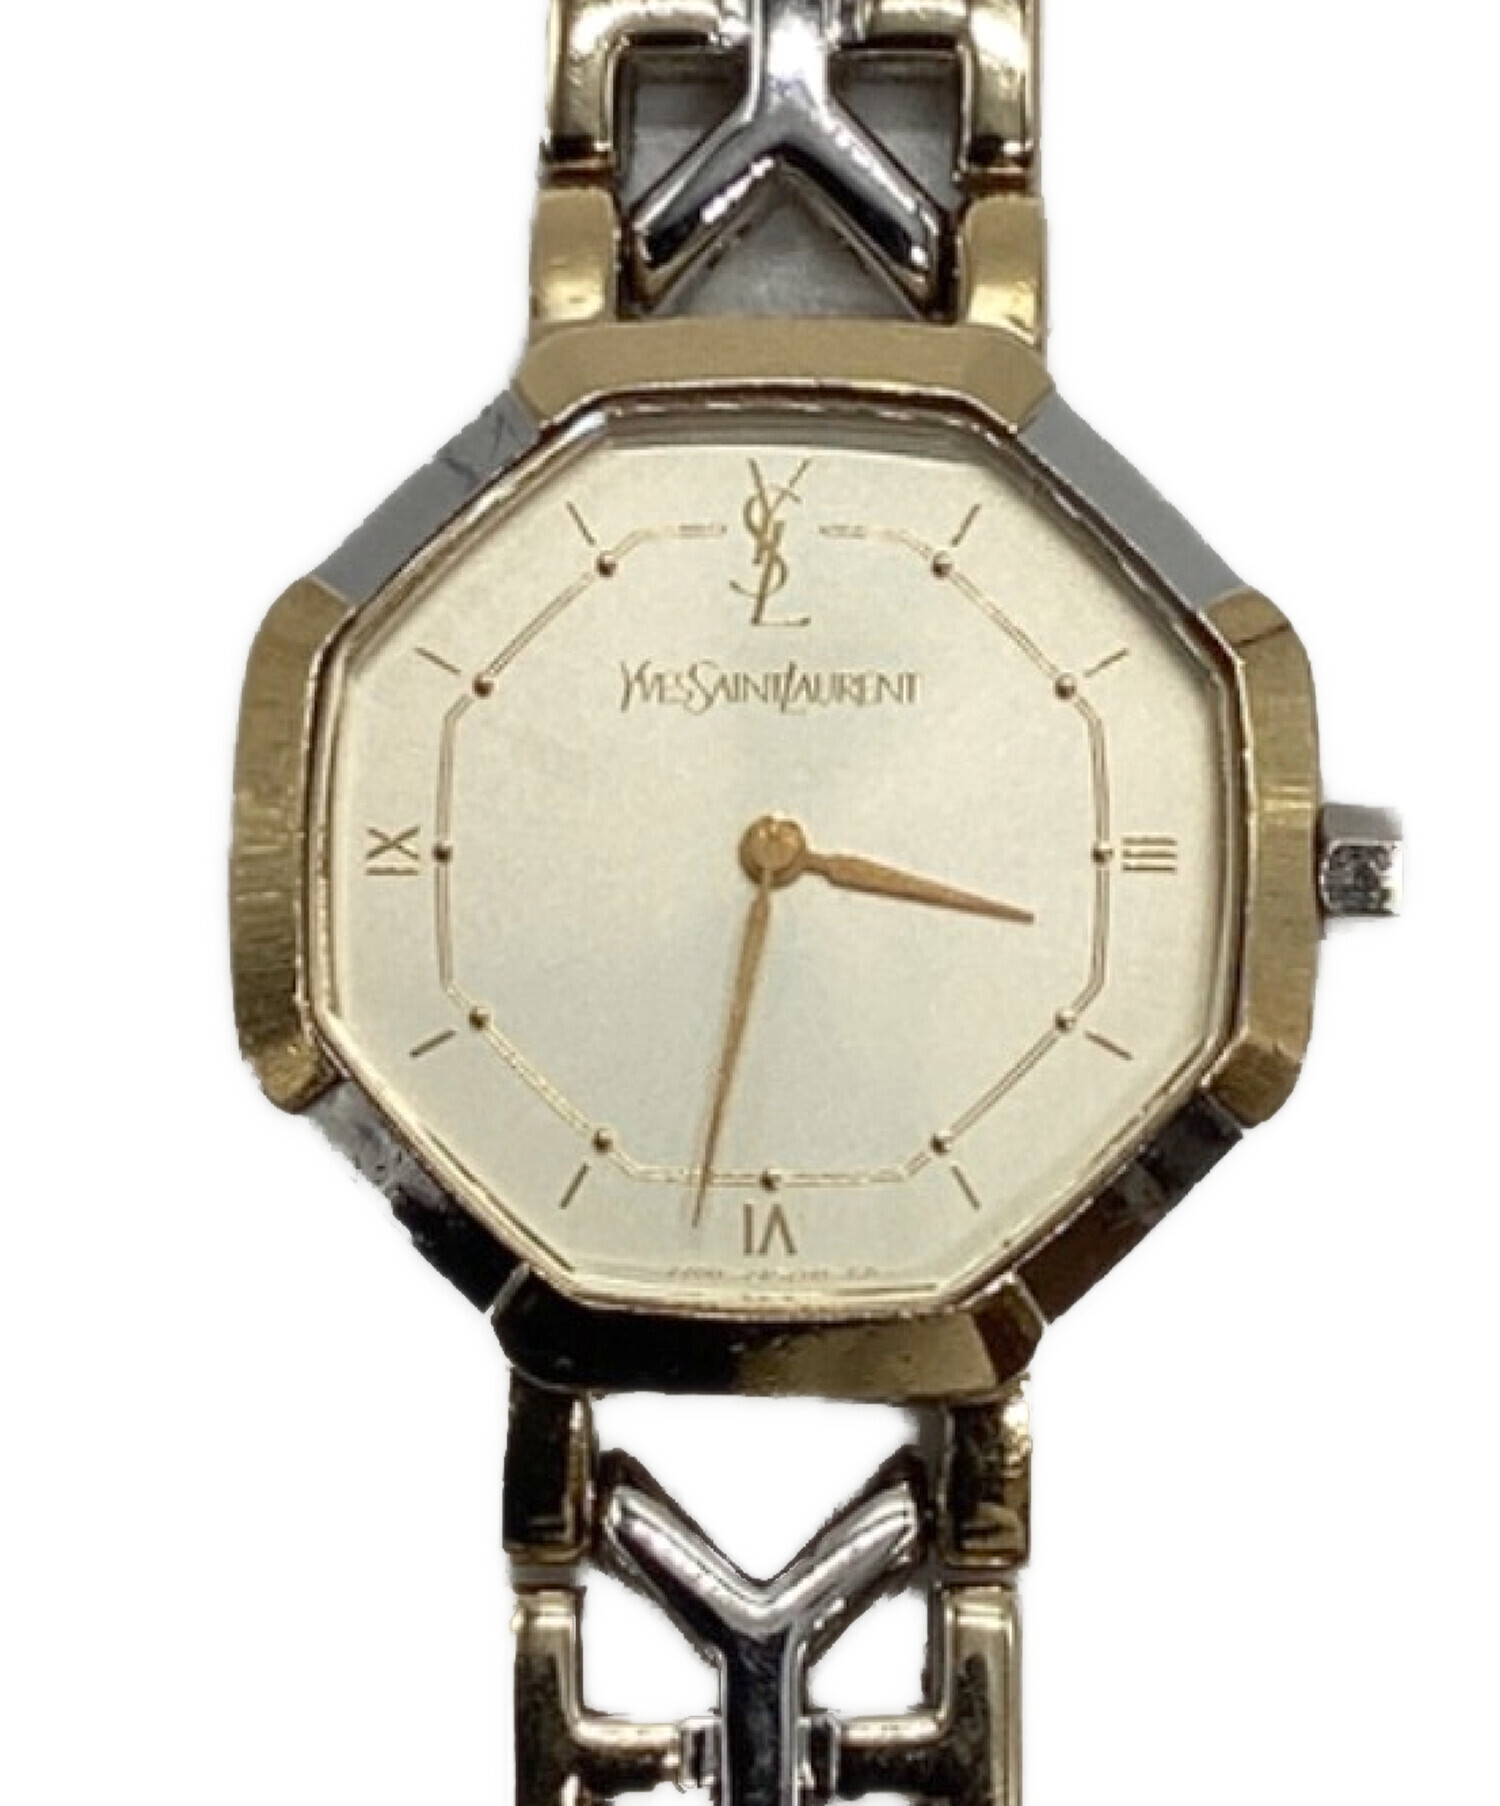 Yves Saint Laurent (イヴサンローラン) 腕時計 ゴールド